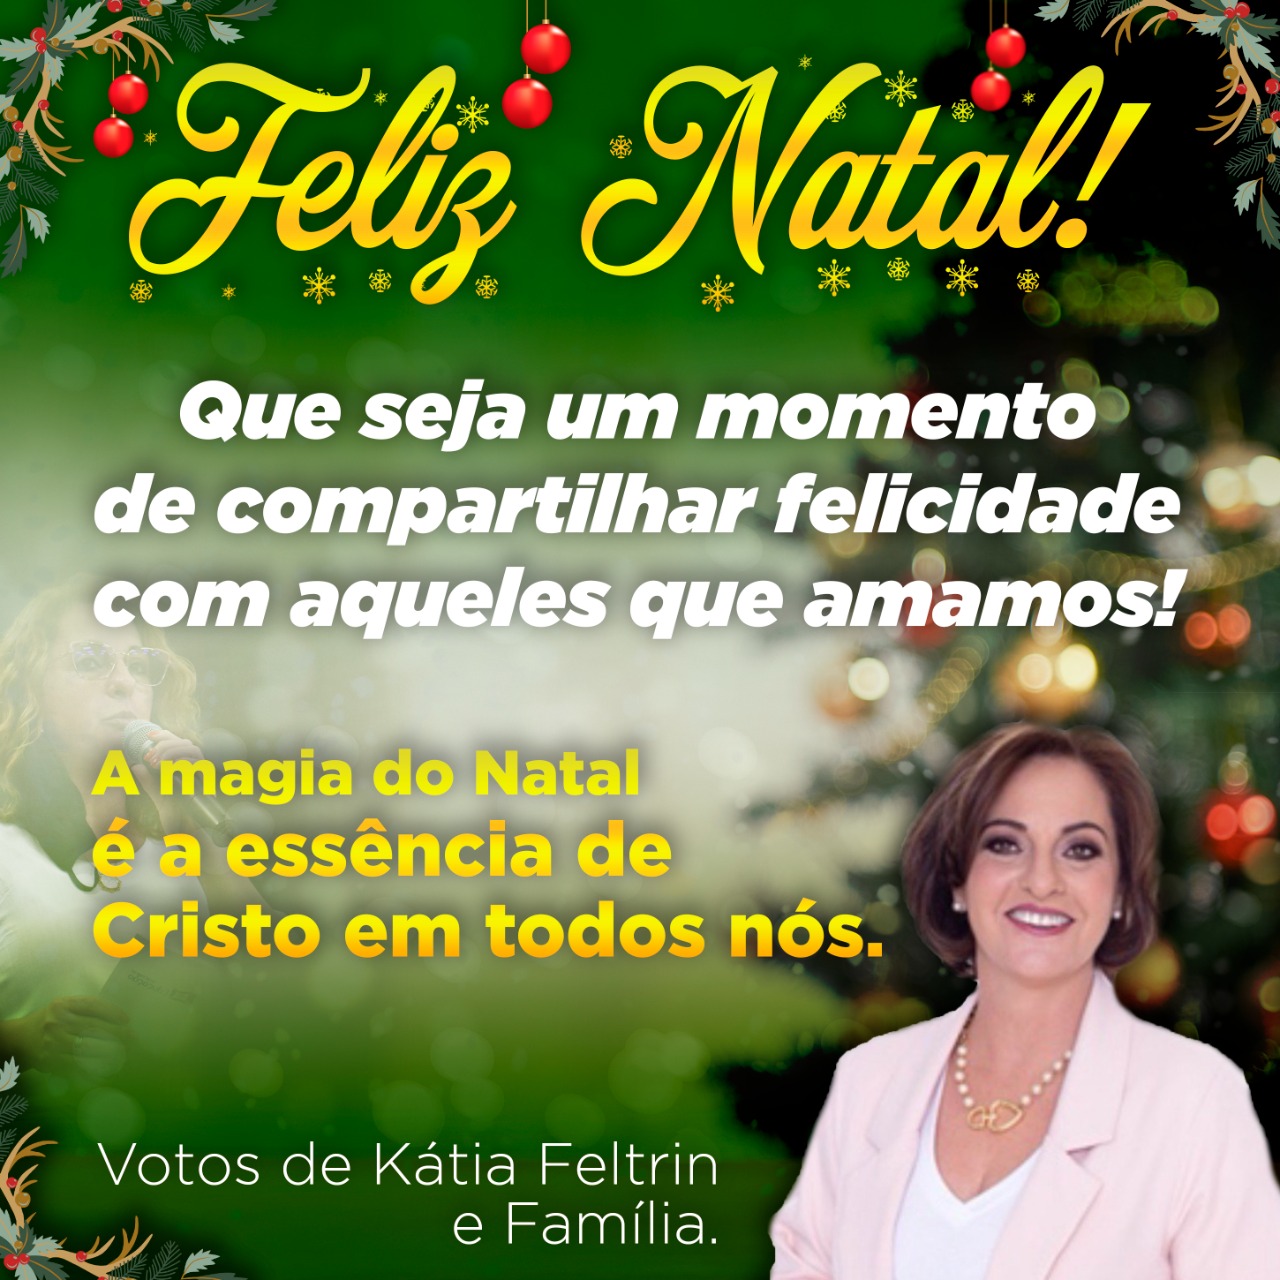 Kátia Feltrin:” a magia do Natal é a essência de Cristo em todos nós”